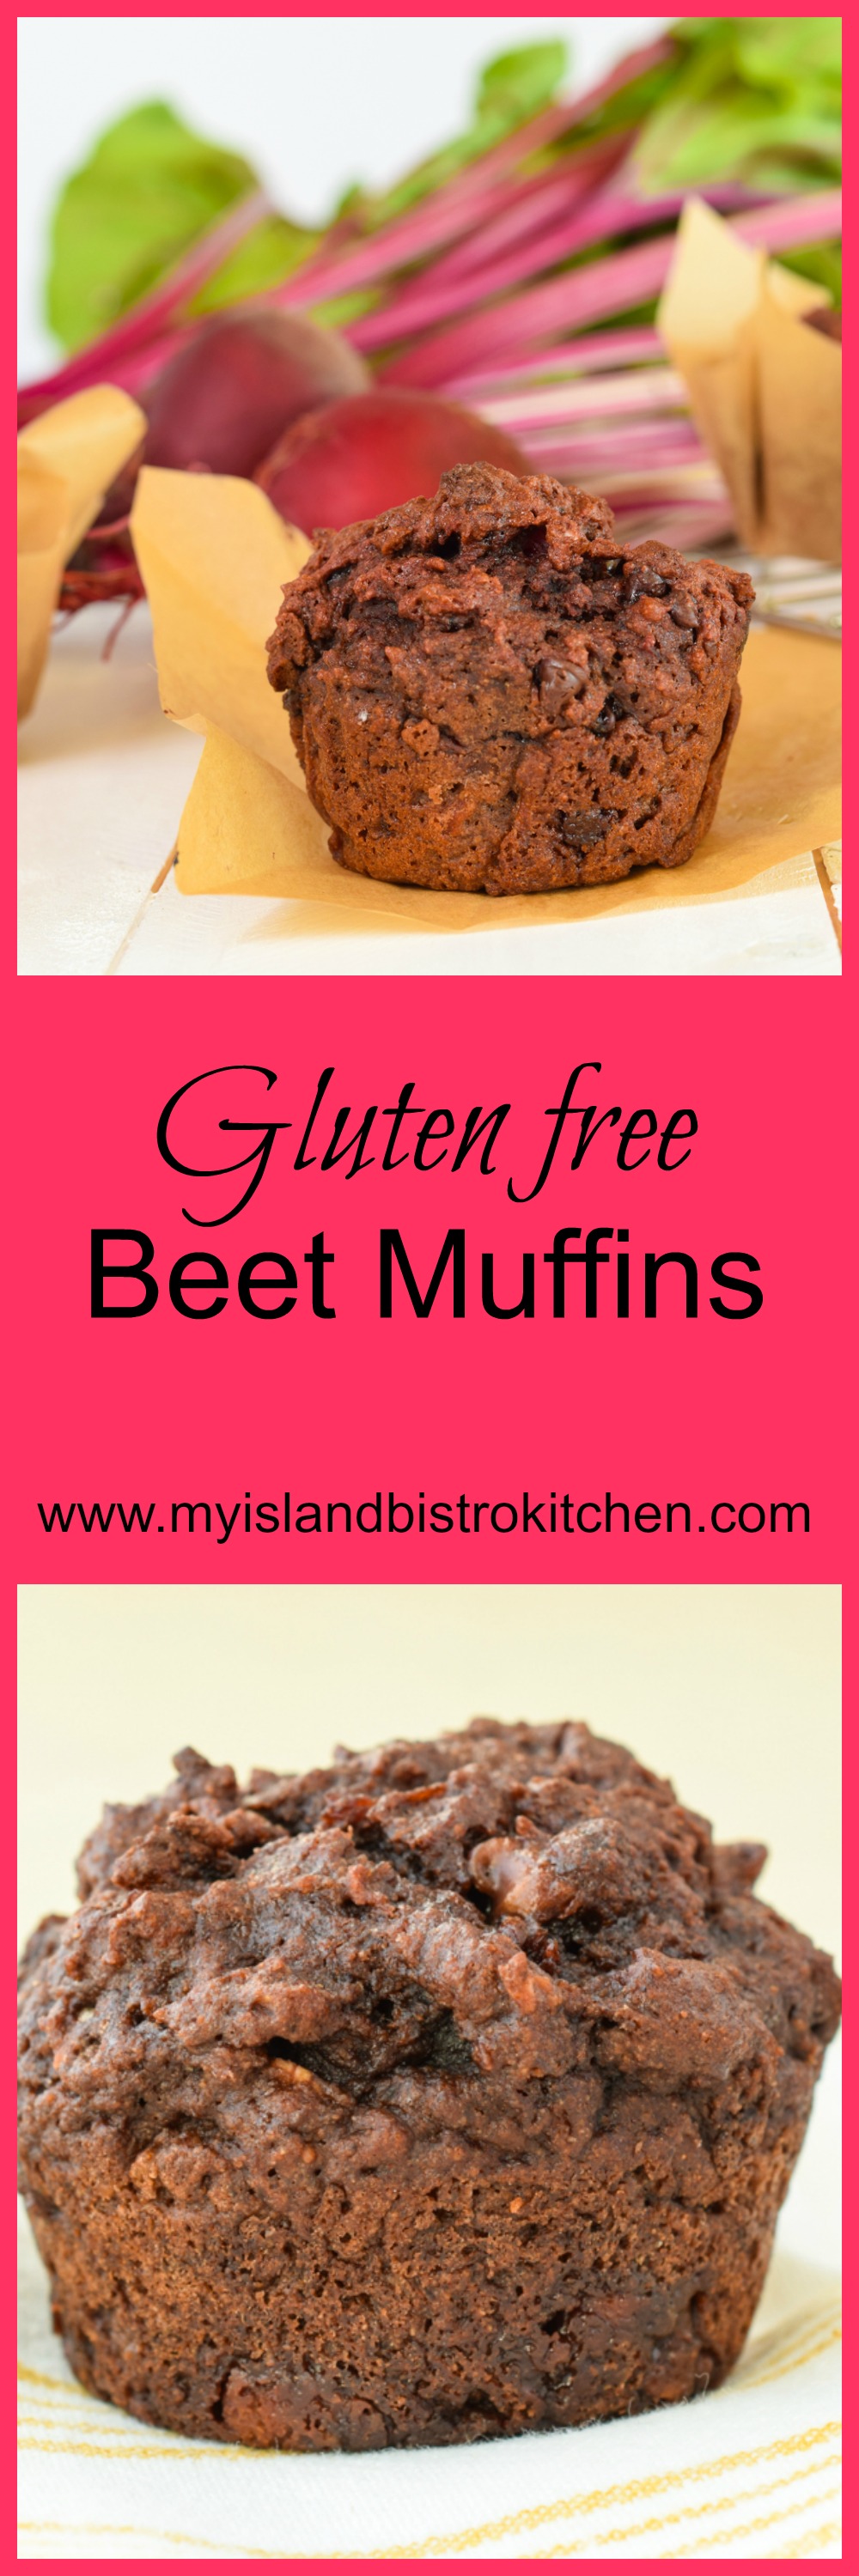 Gluten-free Beet Muffins